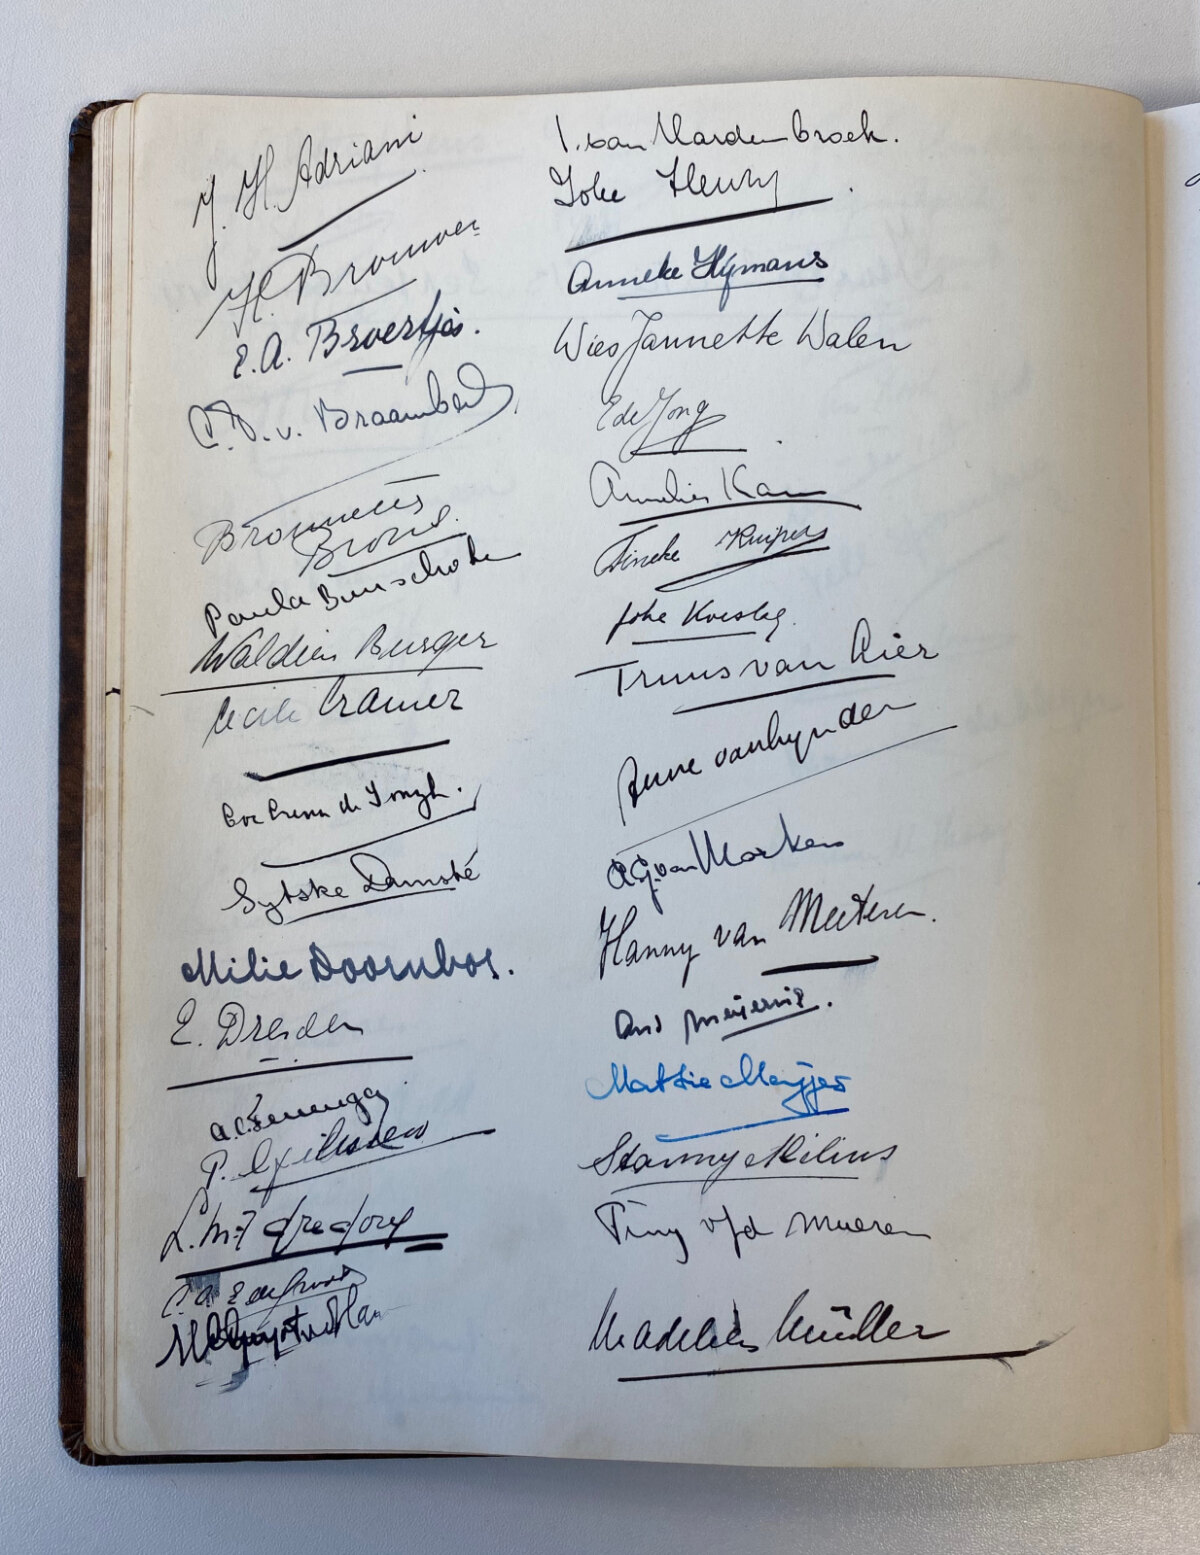 Pagina uit het boekje met handtekeningen van nieuwe UVSV-leden. Deze pagina is op 13-9-1940 gevuld. Foto: Jim Terlingen